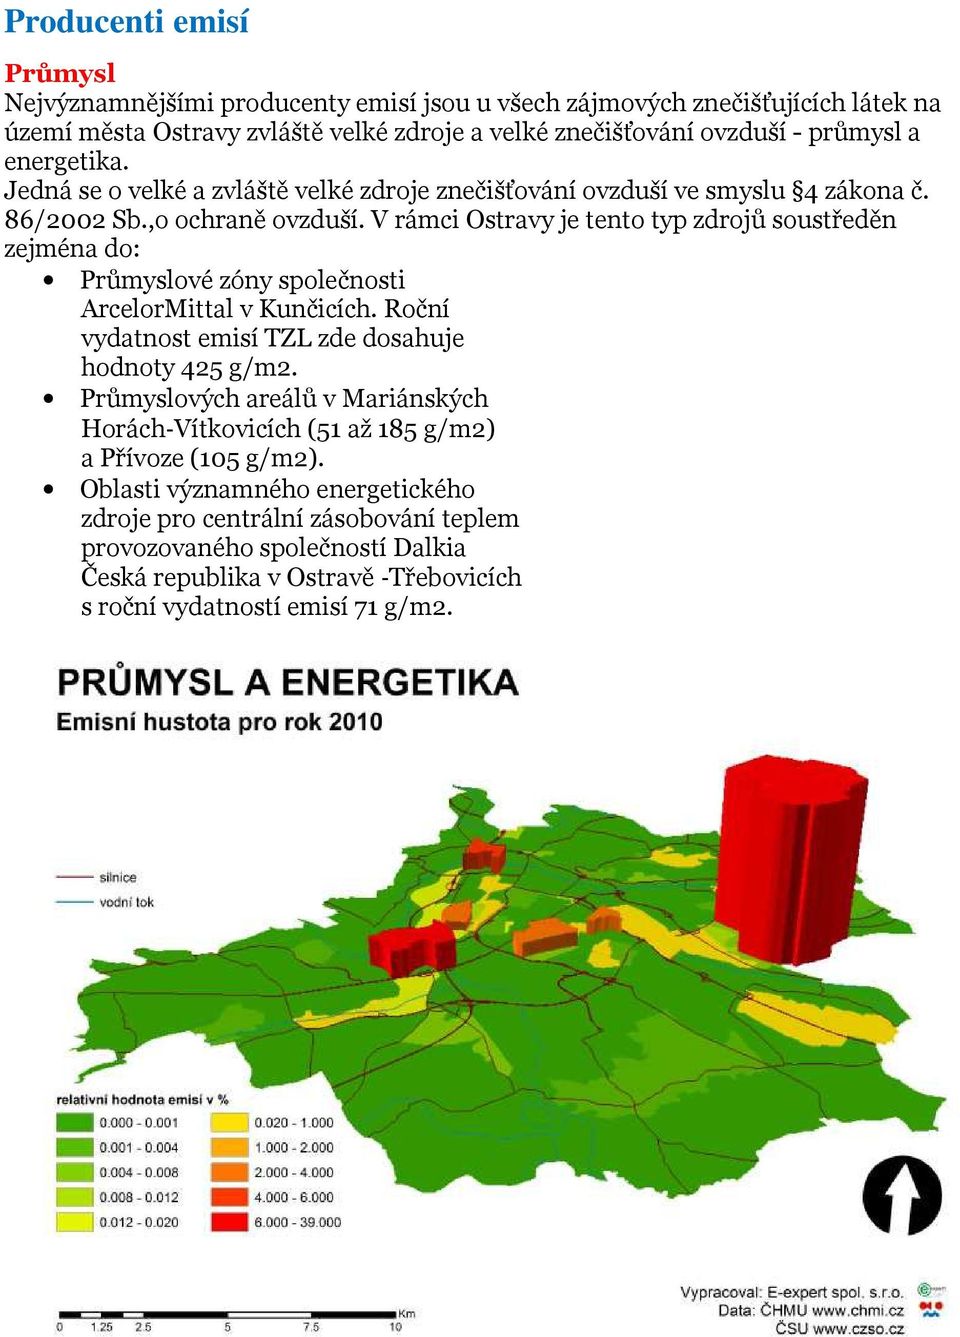 V rámci Ostravy je tento typ zdrojů soustředěn zejména do: Průmyslové zóny společnosti ArcelorMittal v Kunčicích. Roční vydatnost emisí TZL zde dosahuje hodnoty 425 g/m2.